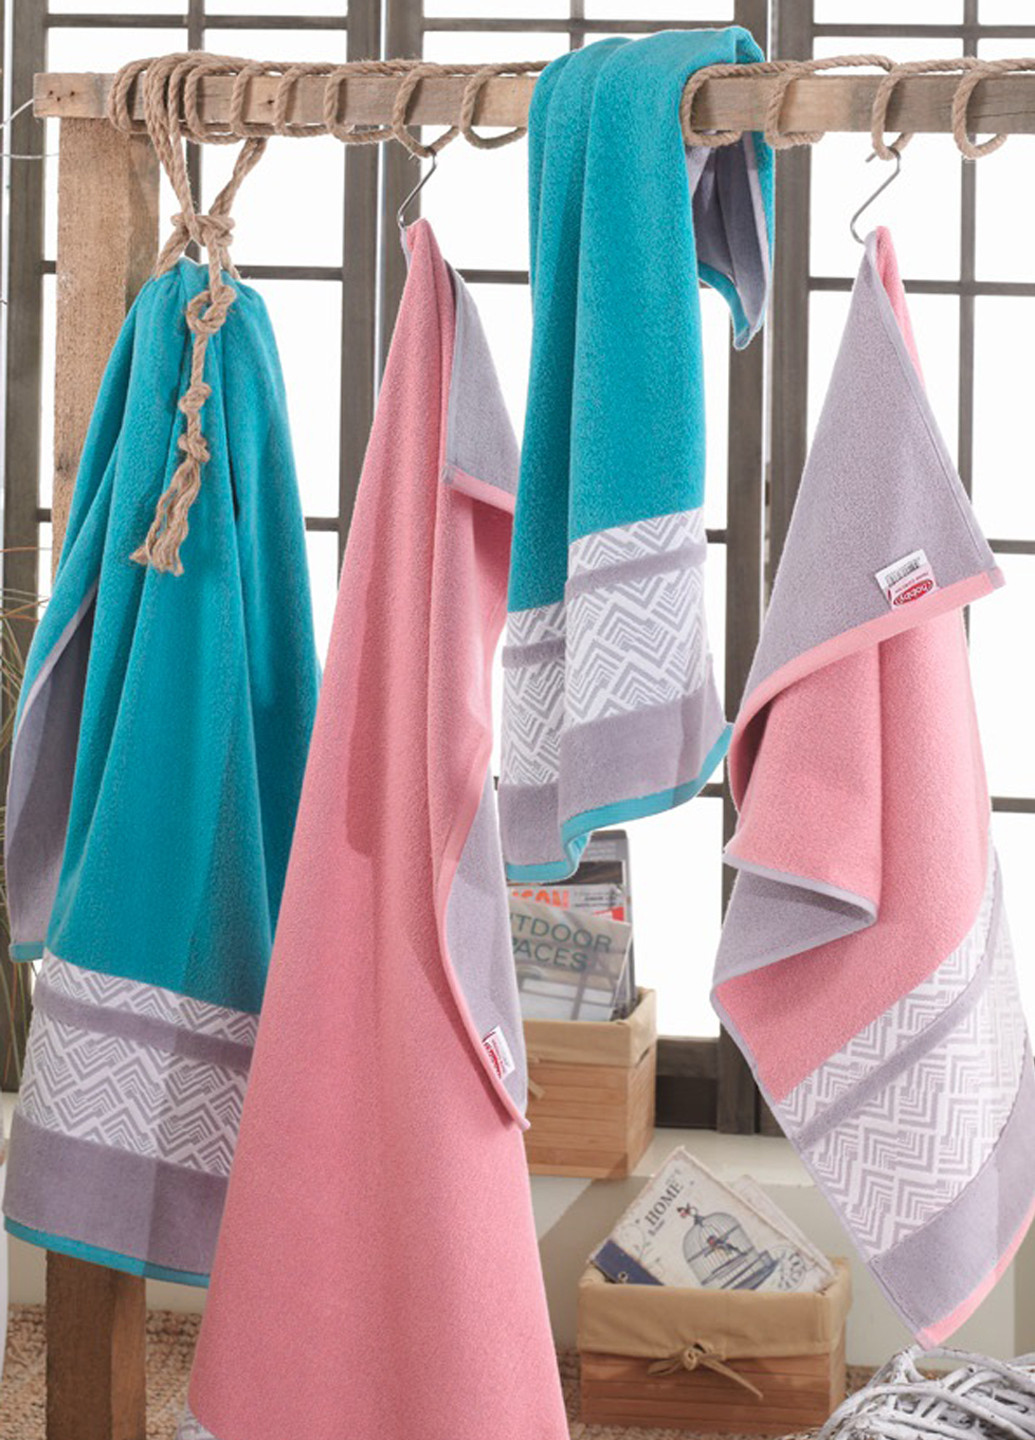 Hobby полотенце, 70х140 см орнамент аквамарин производство - Турция